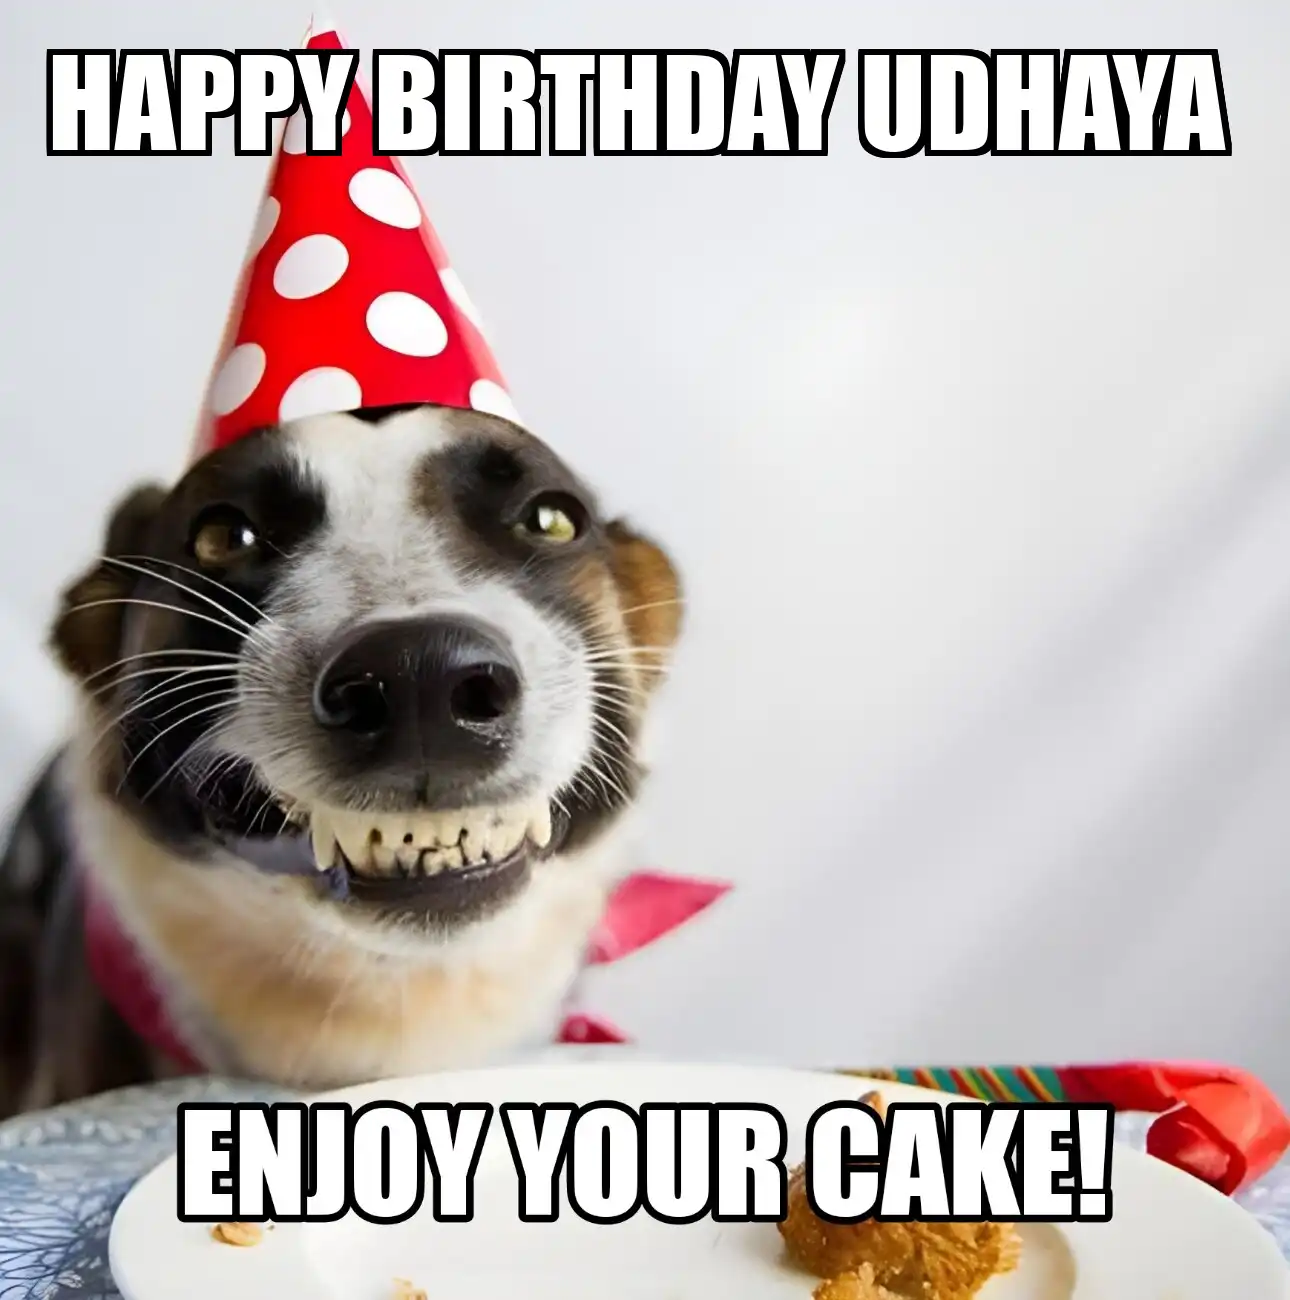 Happy Birthday Udhaya Enjoy Your Cake Dog Meme